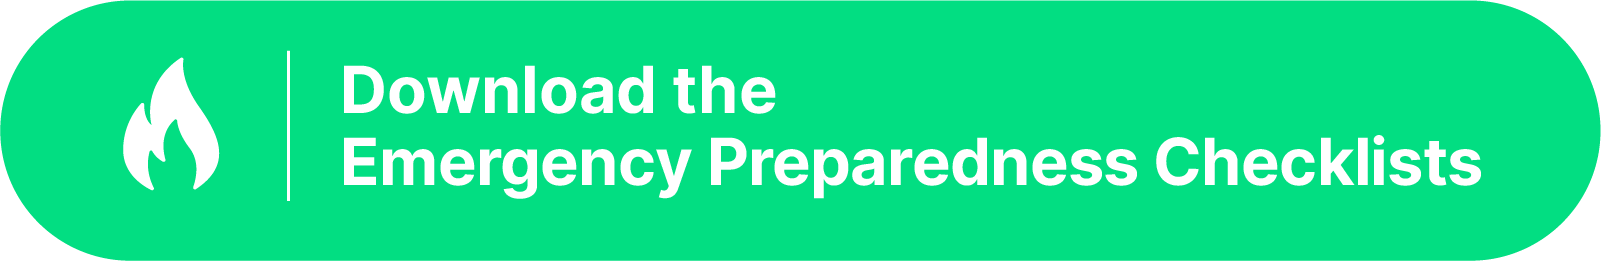 Emergency preparedness checklists button